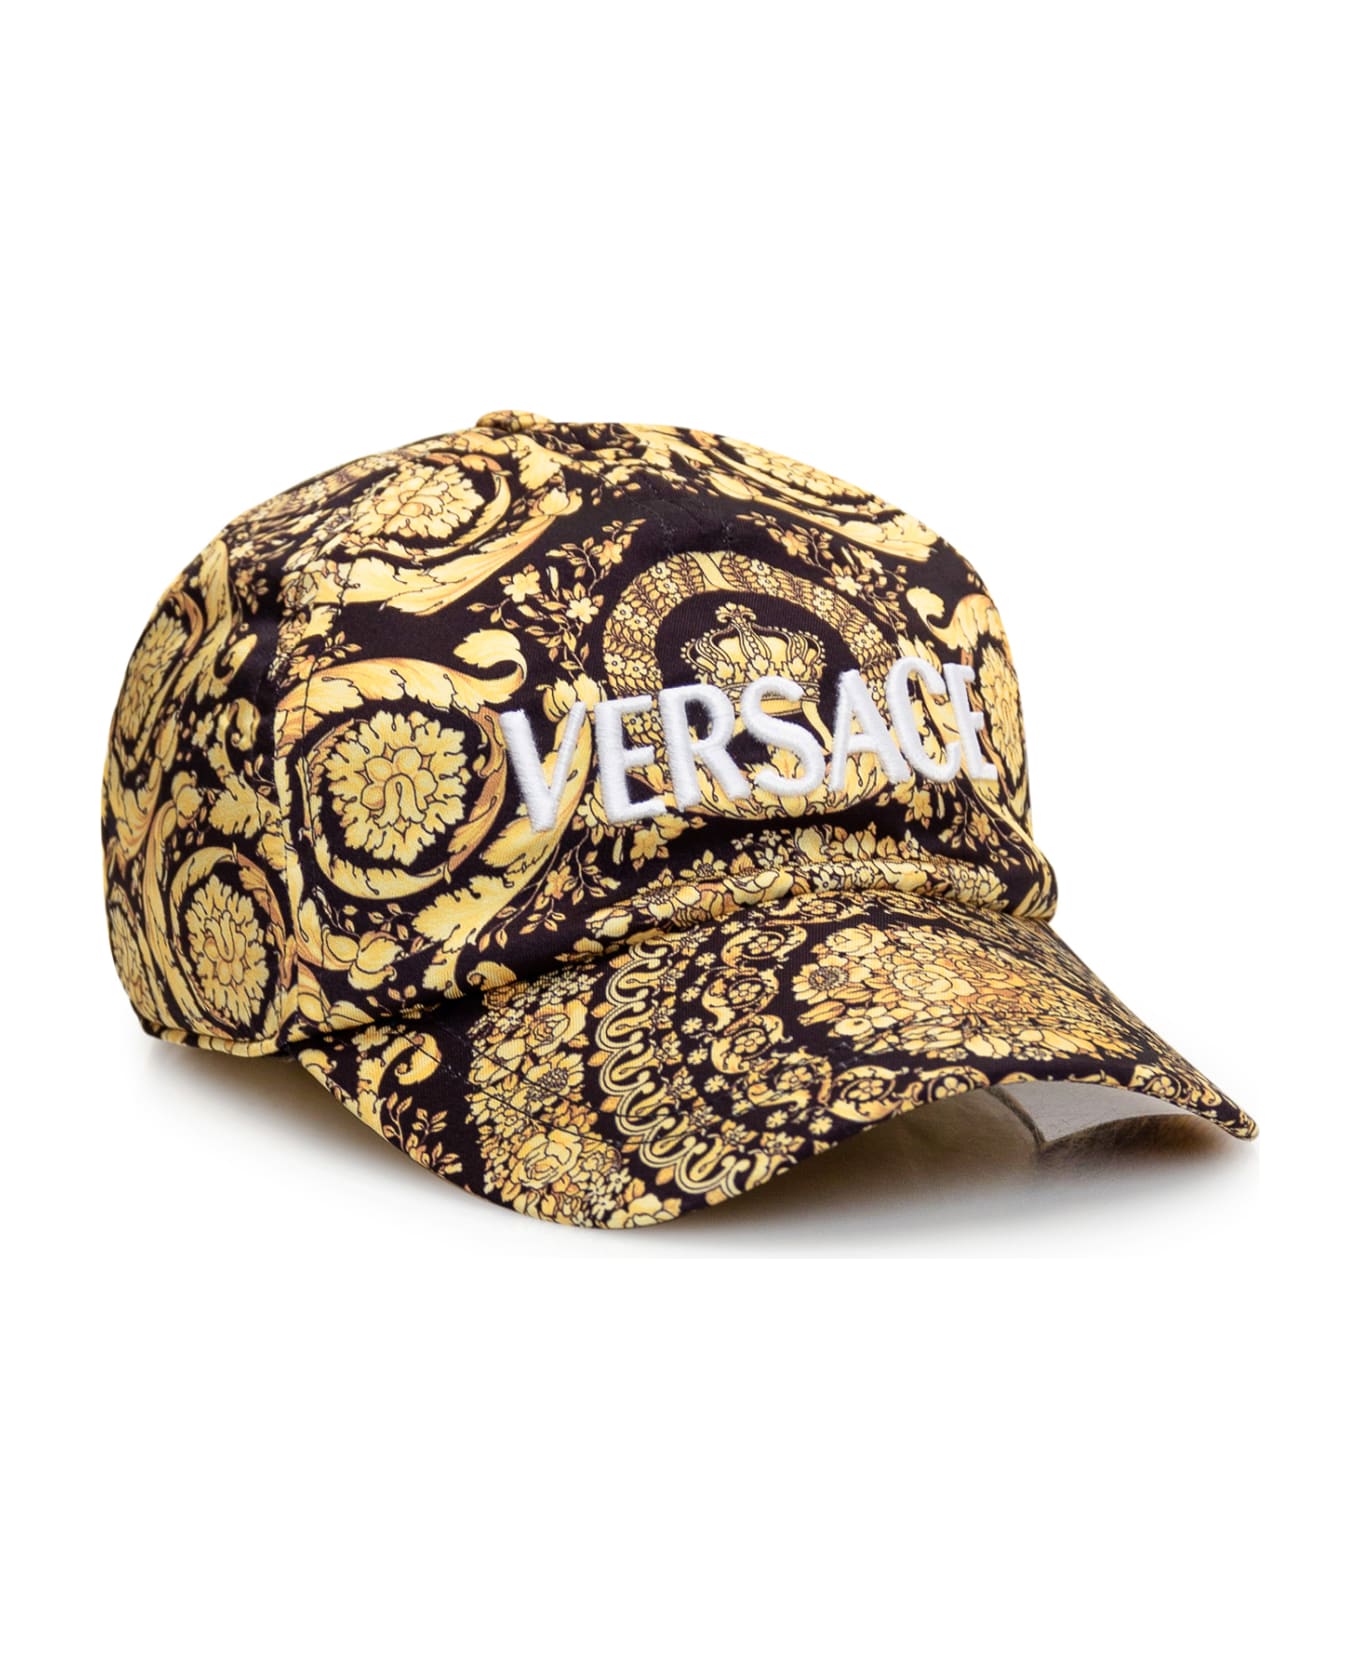 Versace Barocco Baseball Cap - NERO-ORO 帽子